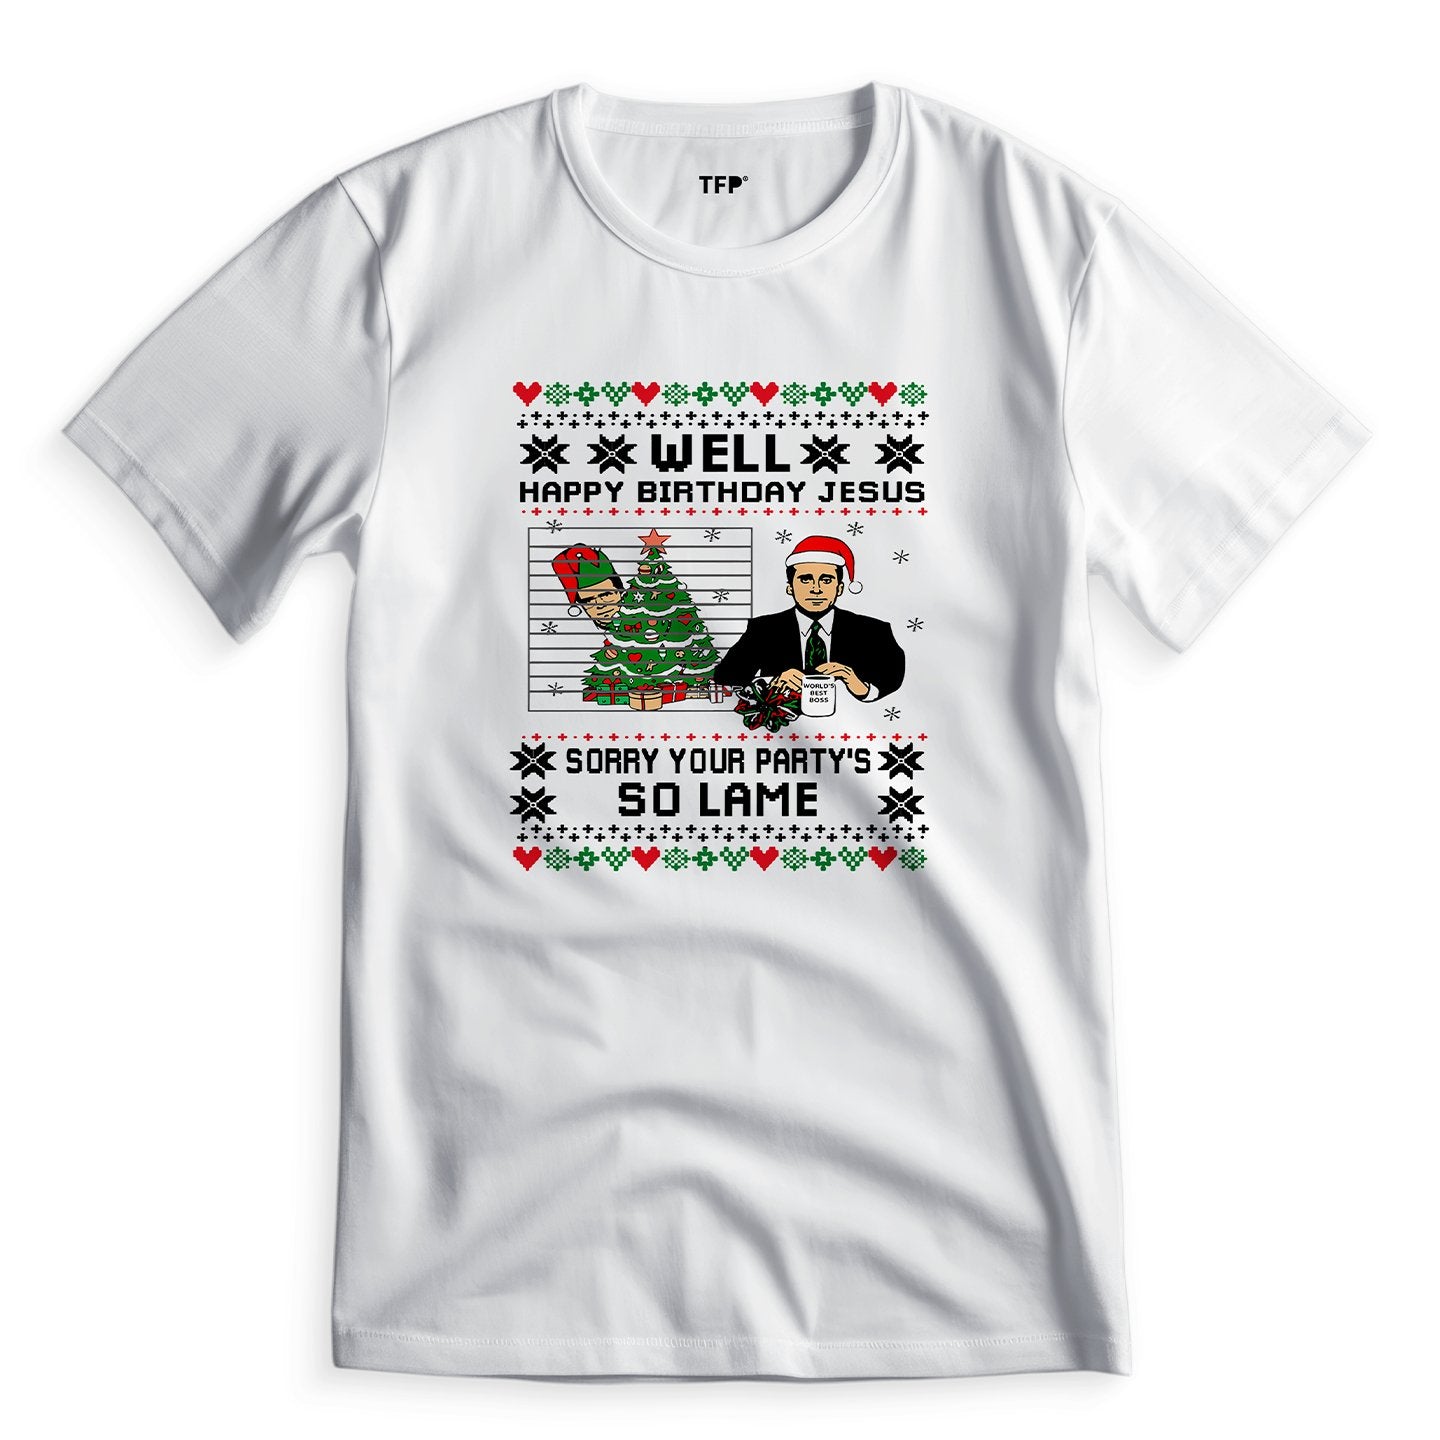 Well Happy Birthday Jesus - T-Shirt